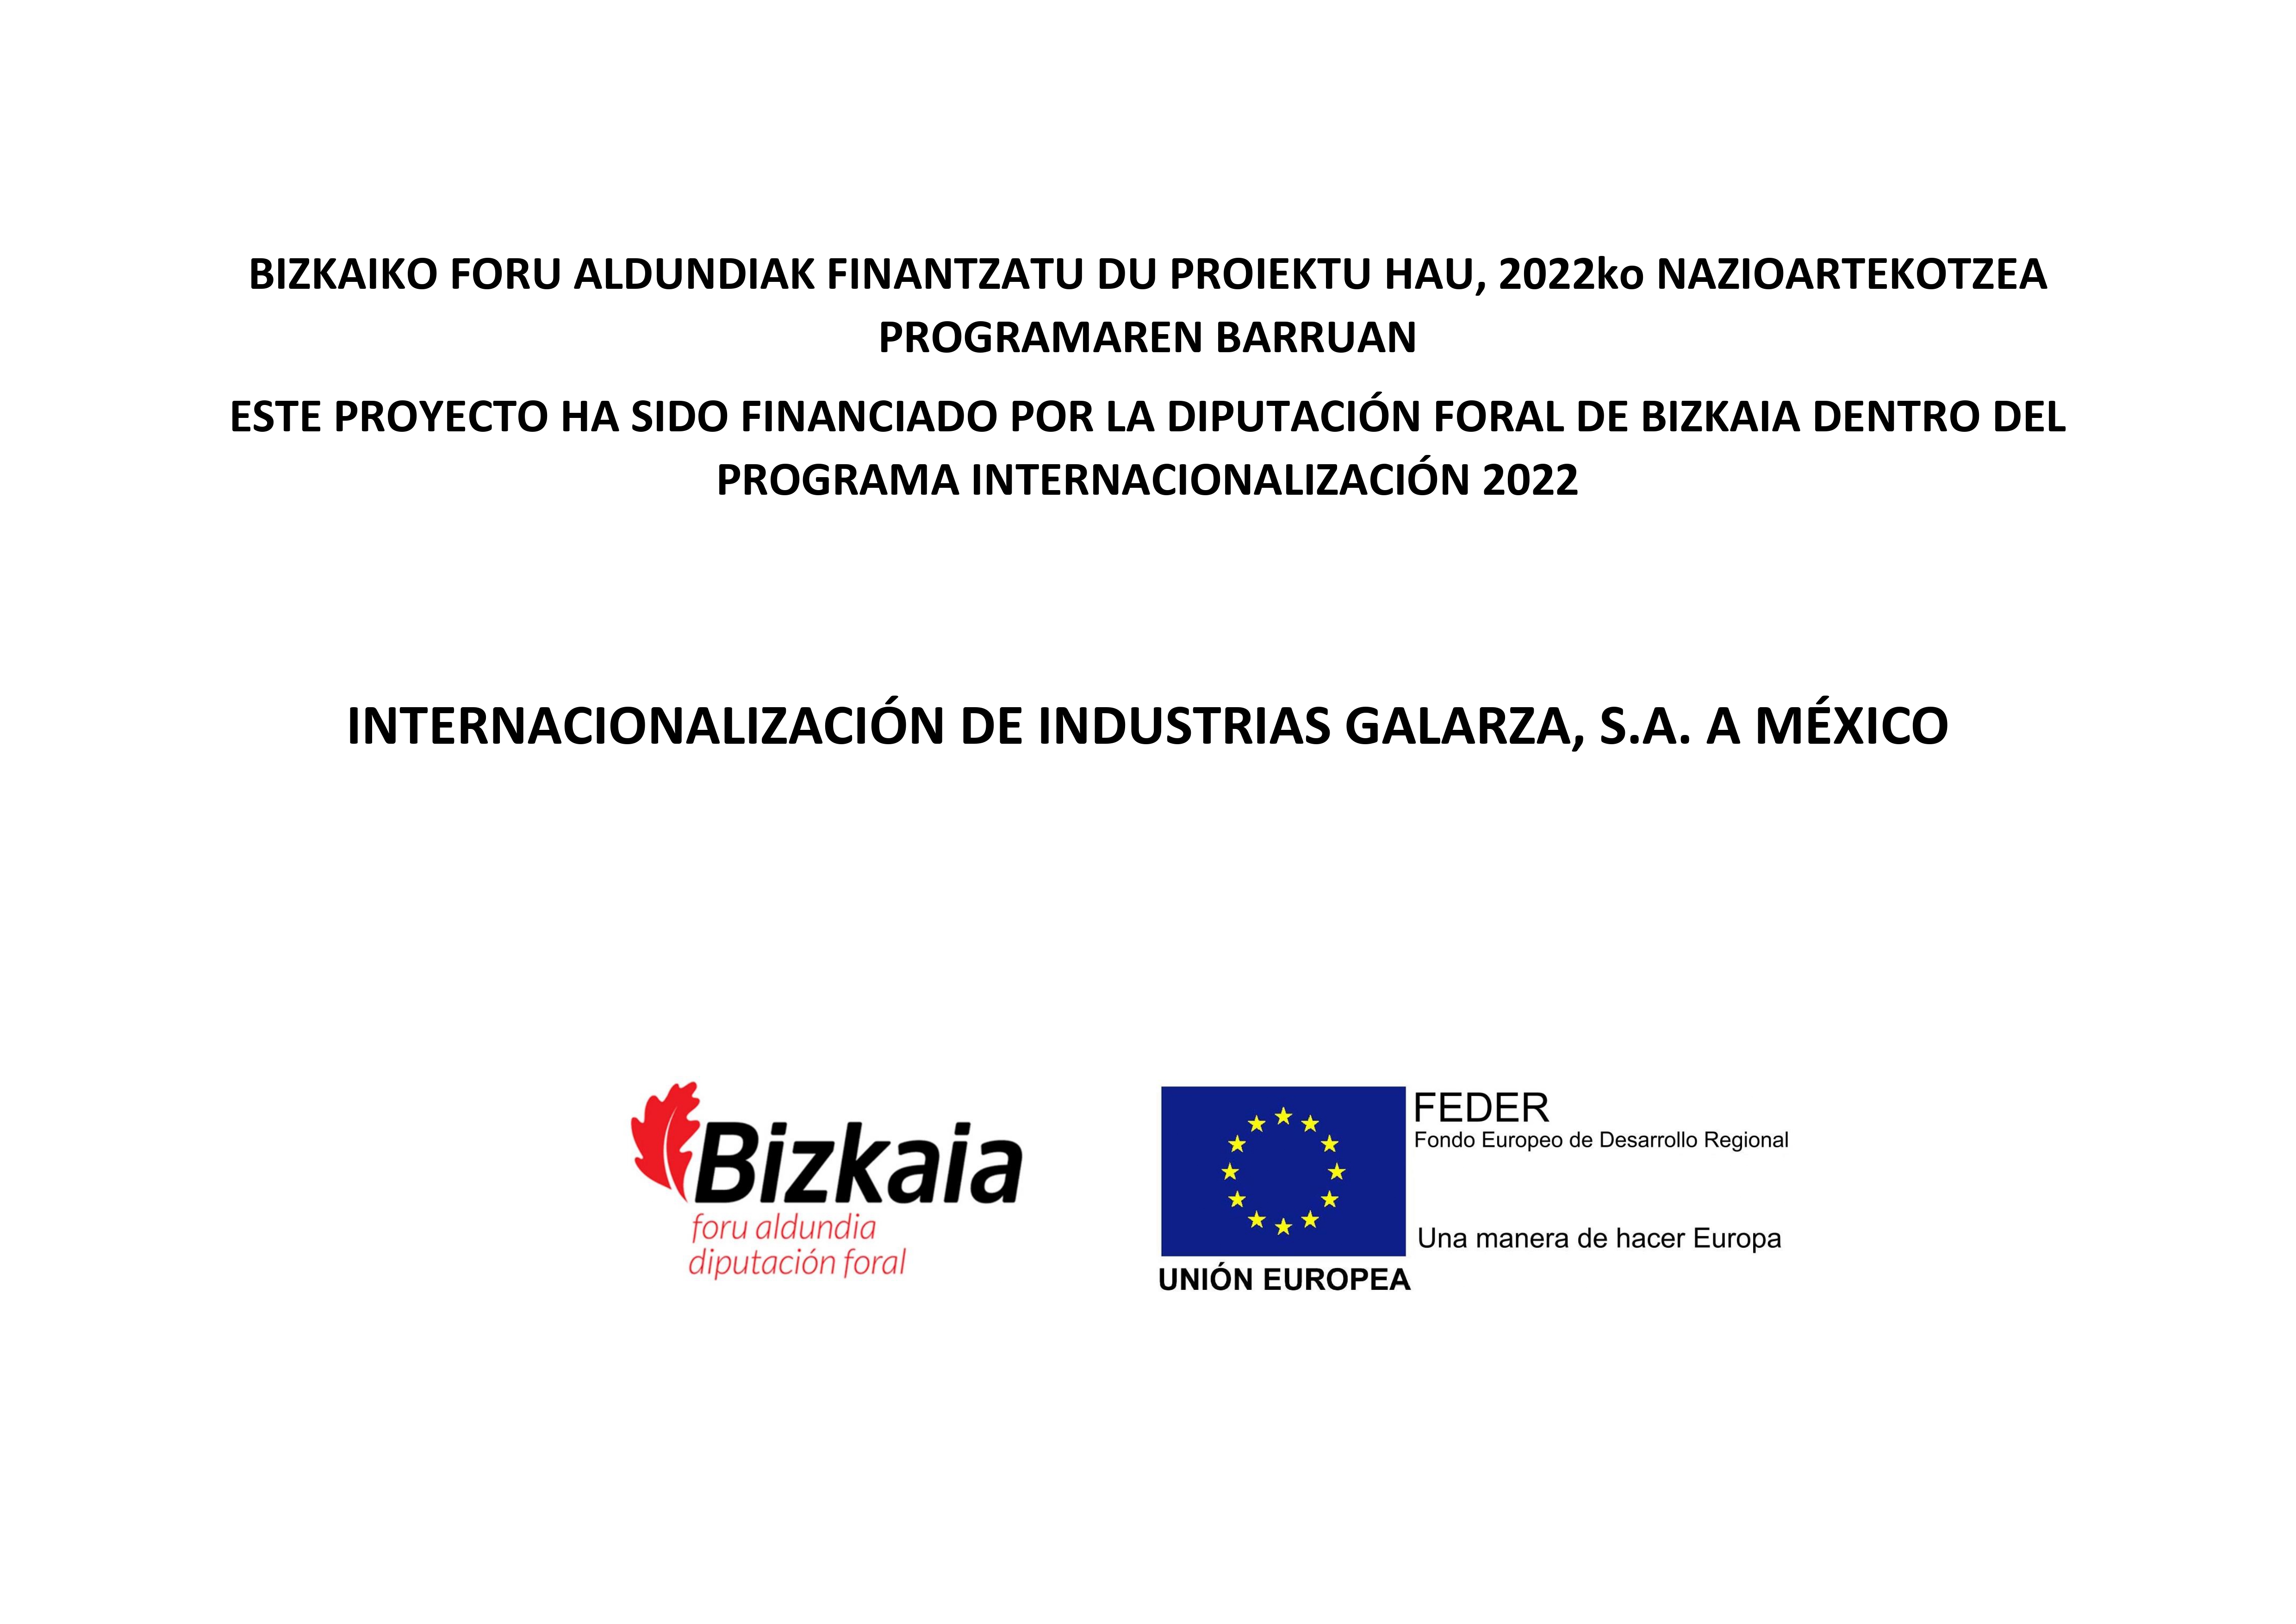 Industrias Galarza ha sido financiada por la Diputación Foral de Bizkaia en su proyecto de internacionalización en Mexico, dentro del programa “Internacionalización 2022”.